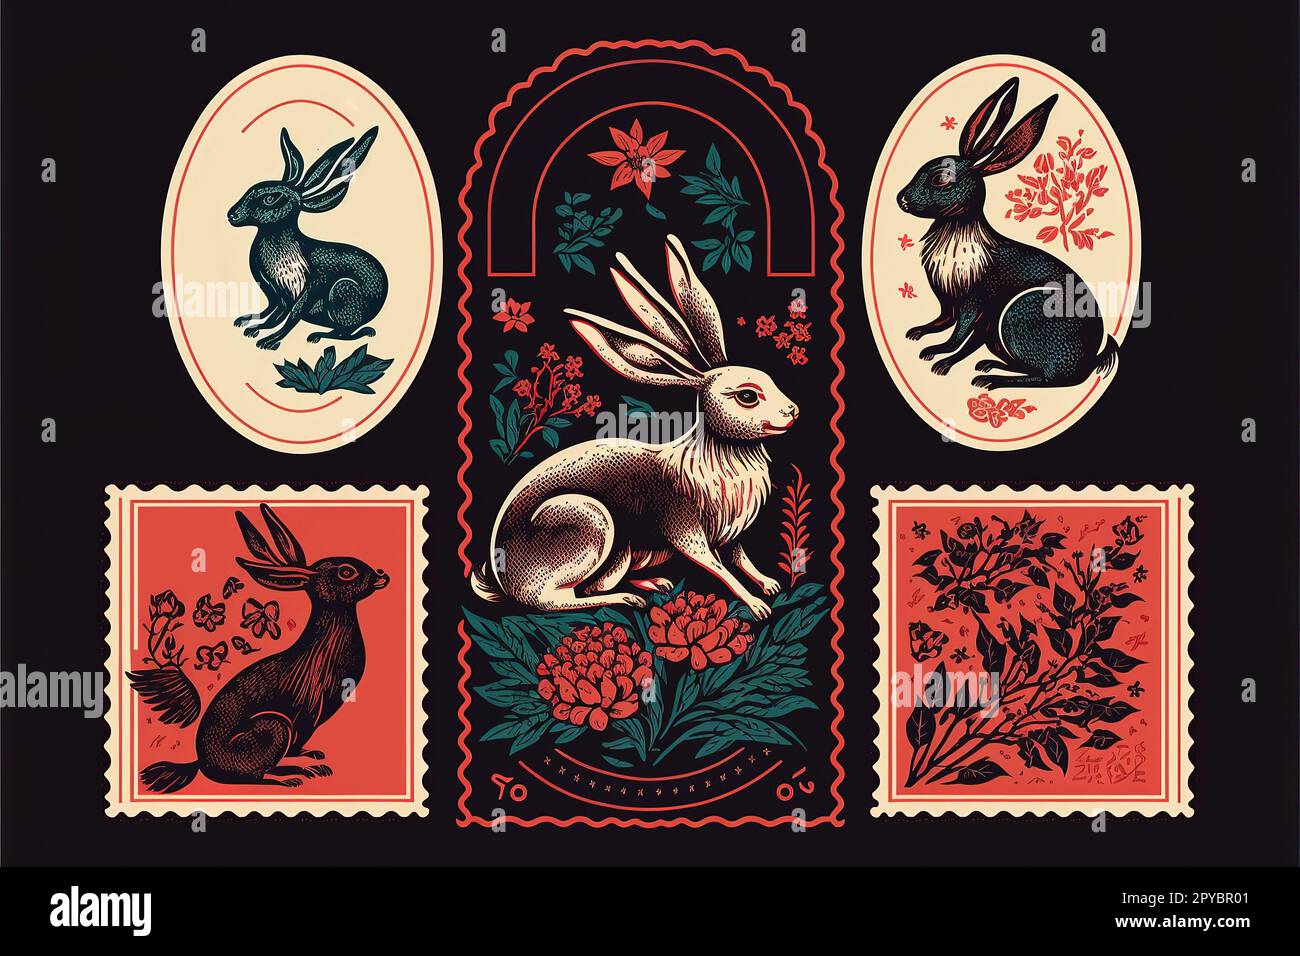 Chinesisches Mondneujahrstier mit Blumen, asiatischen Kaninchenmarken und rotem Horoskop-Vektor-Illustration-Set Stockfoto